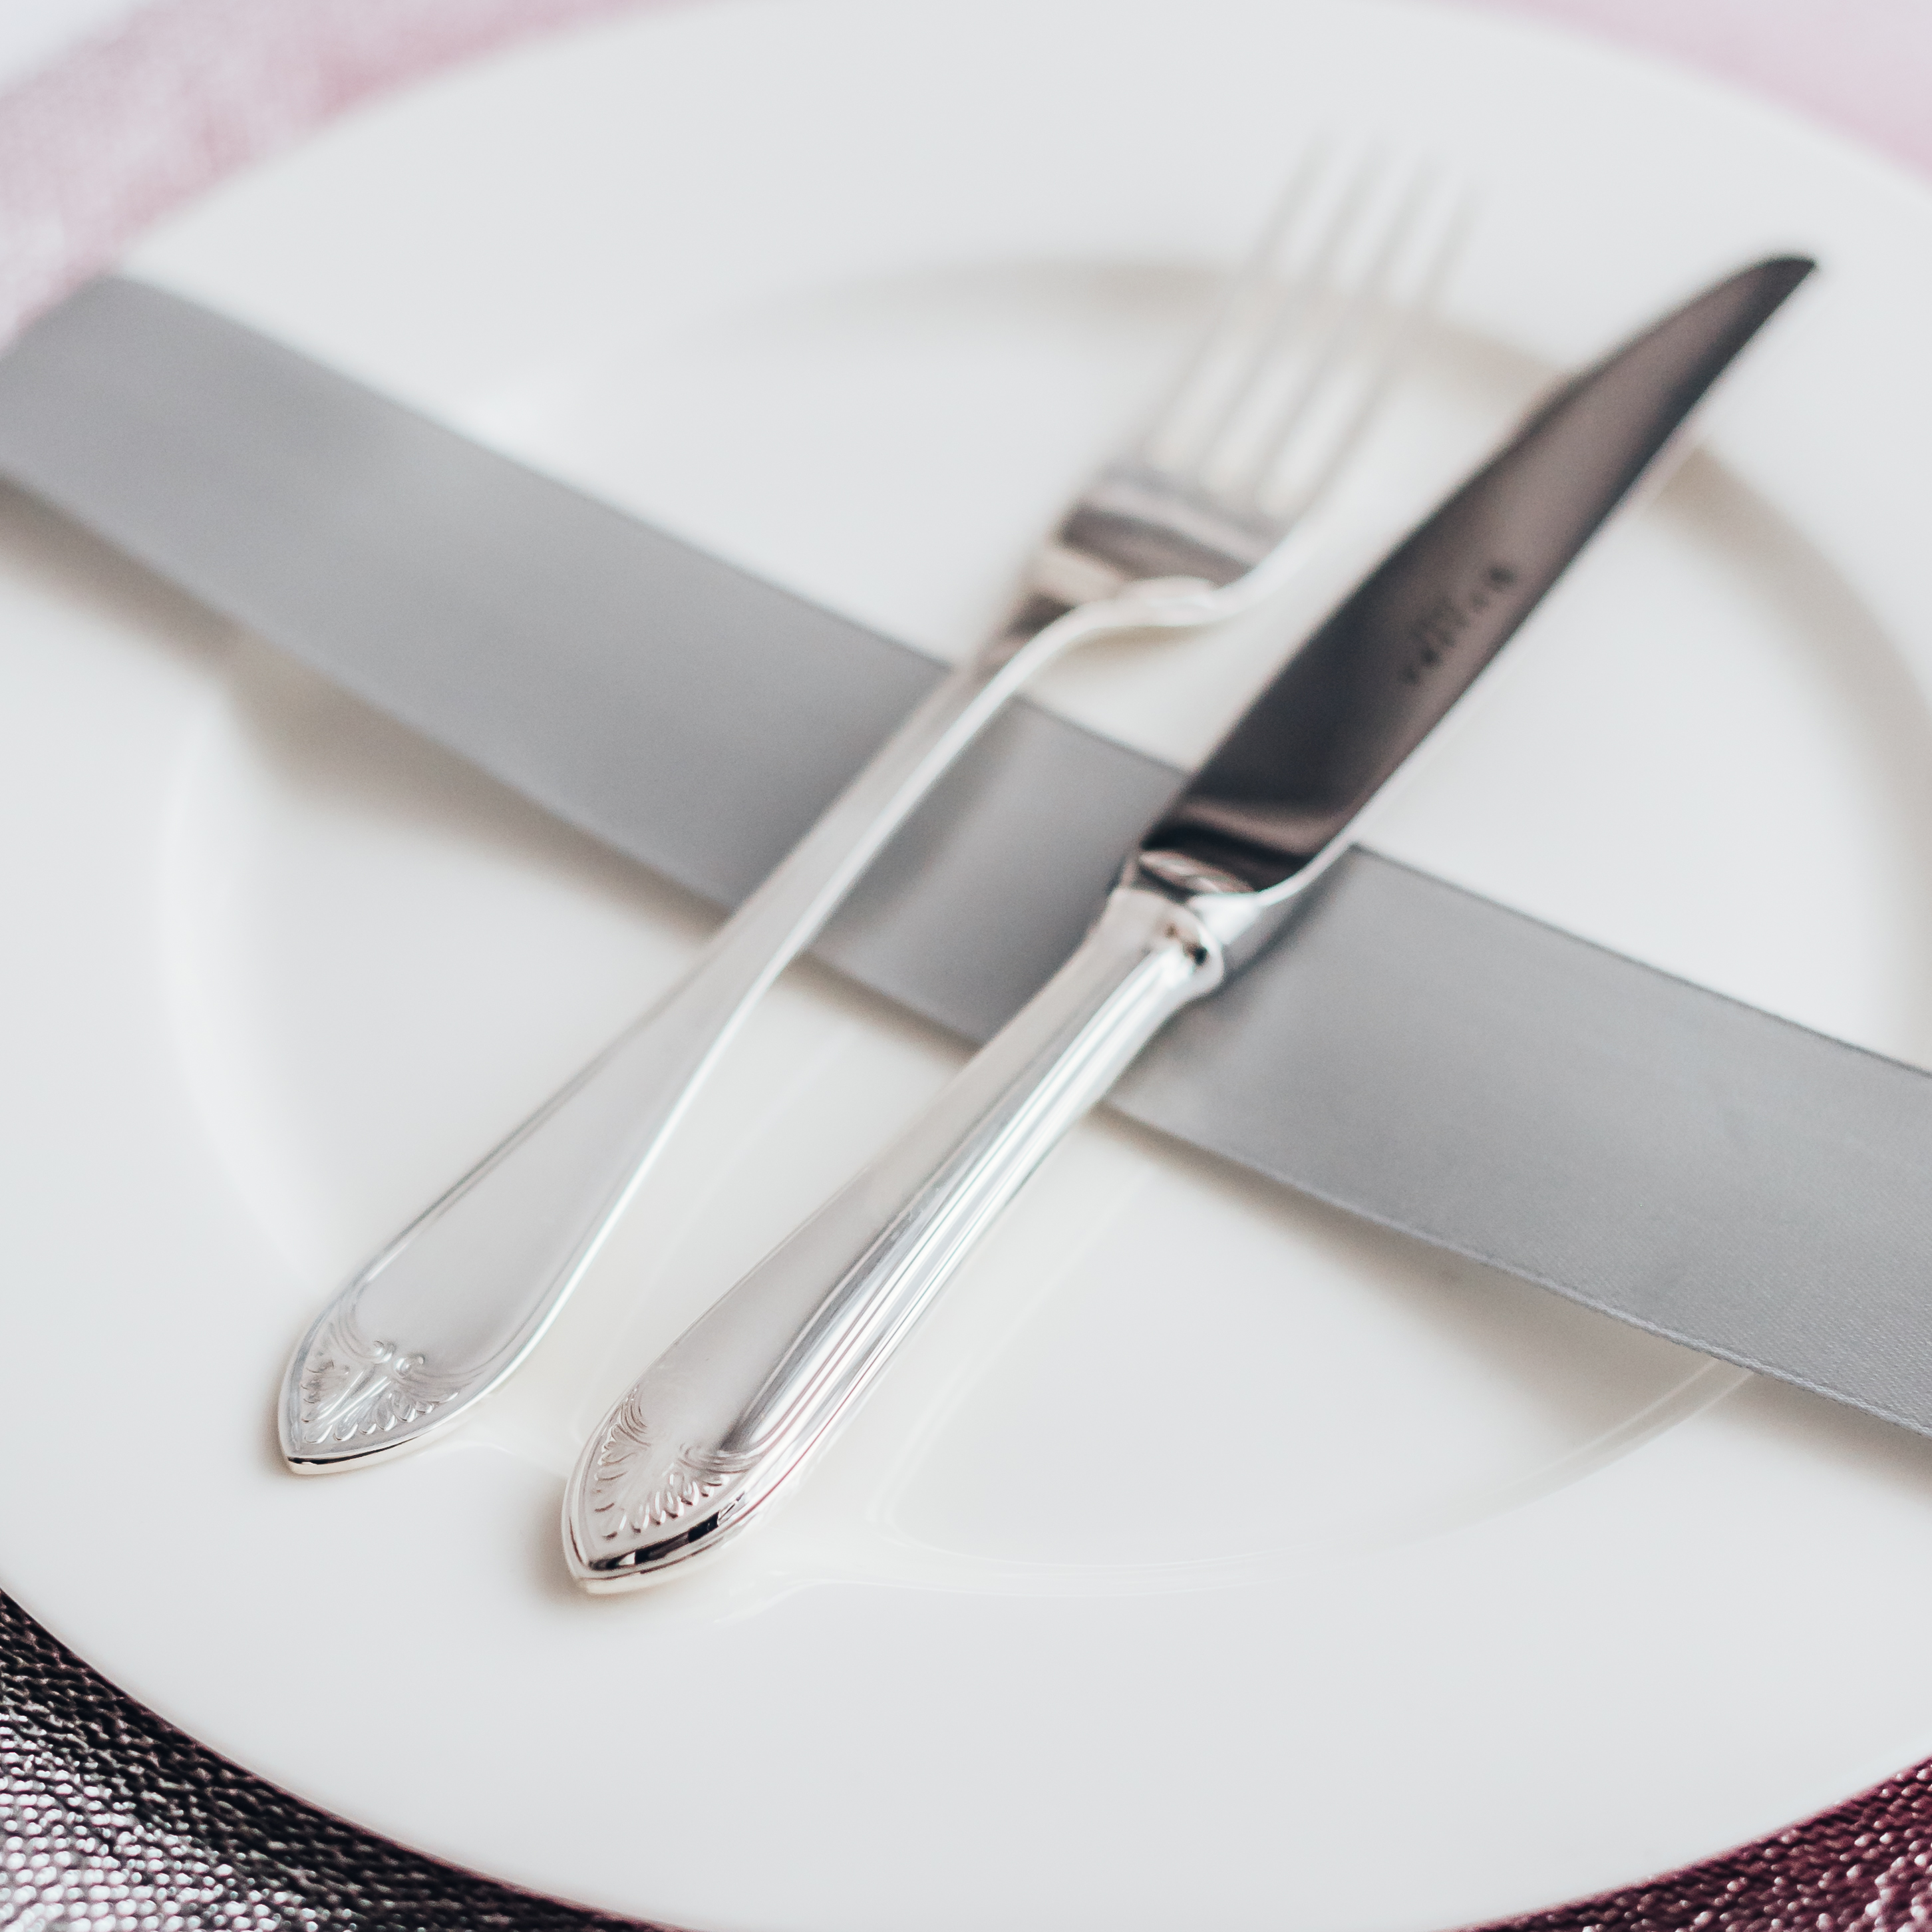 Eating utensil etiquette - Wikipedia